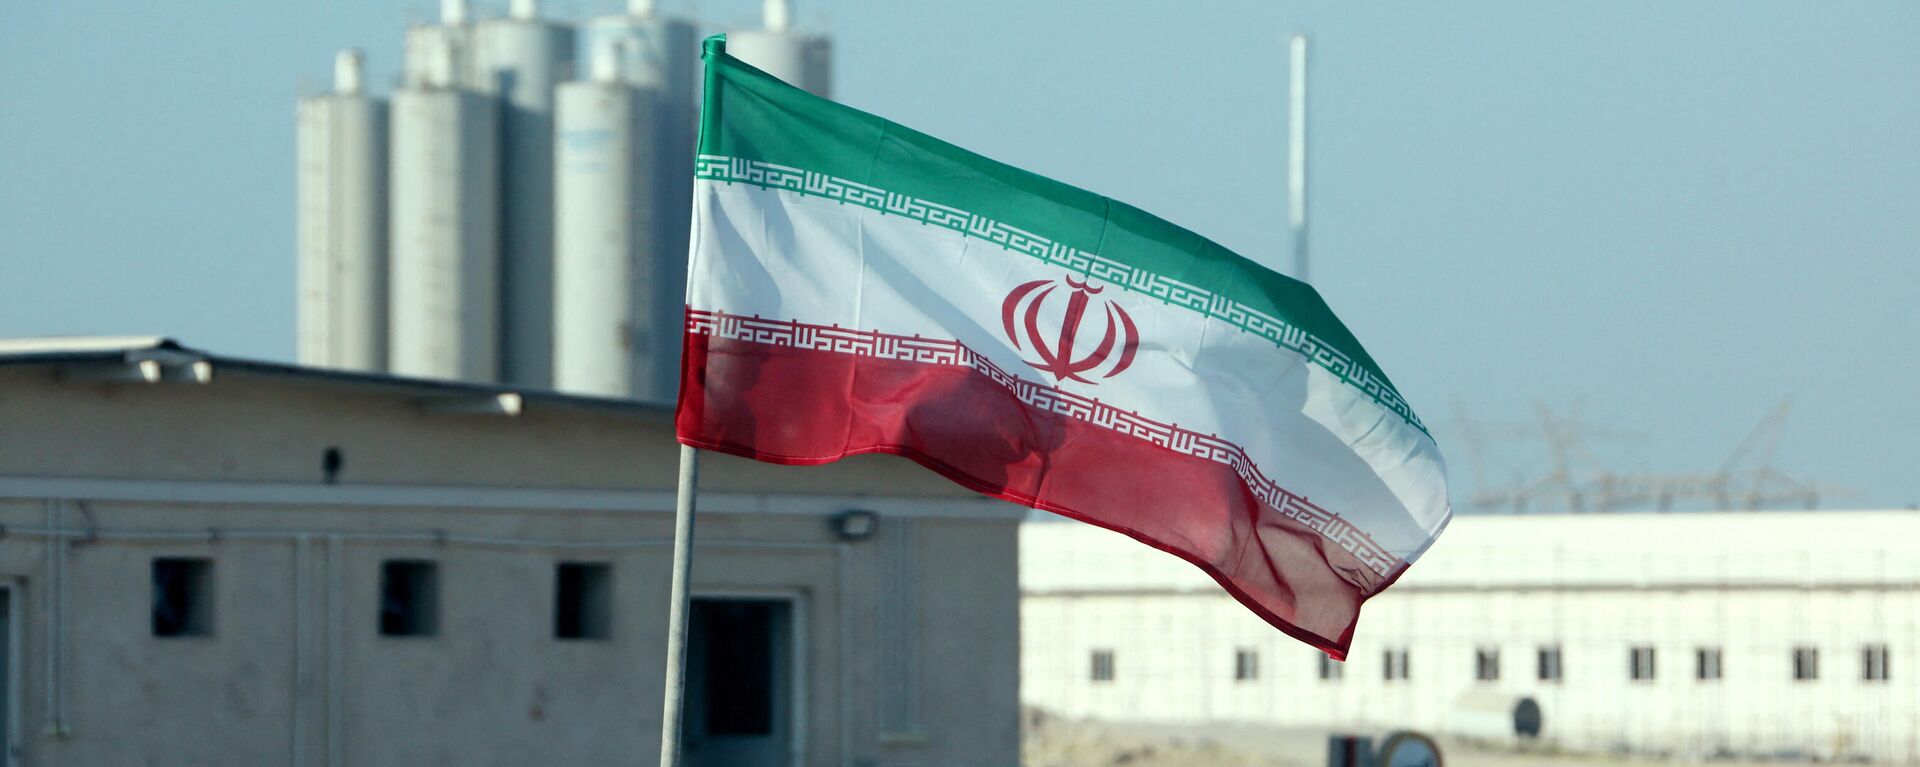 La bandera de Irán frente a una planta nuclear (archivo) - Sputnik Mundo, 1920, 19.08.2022